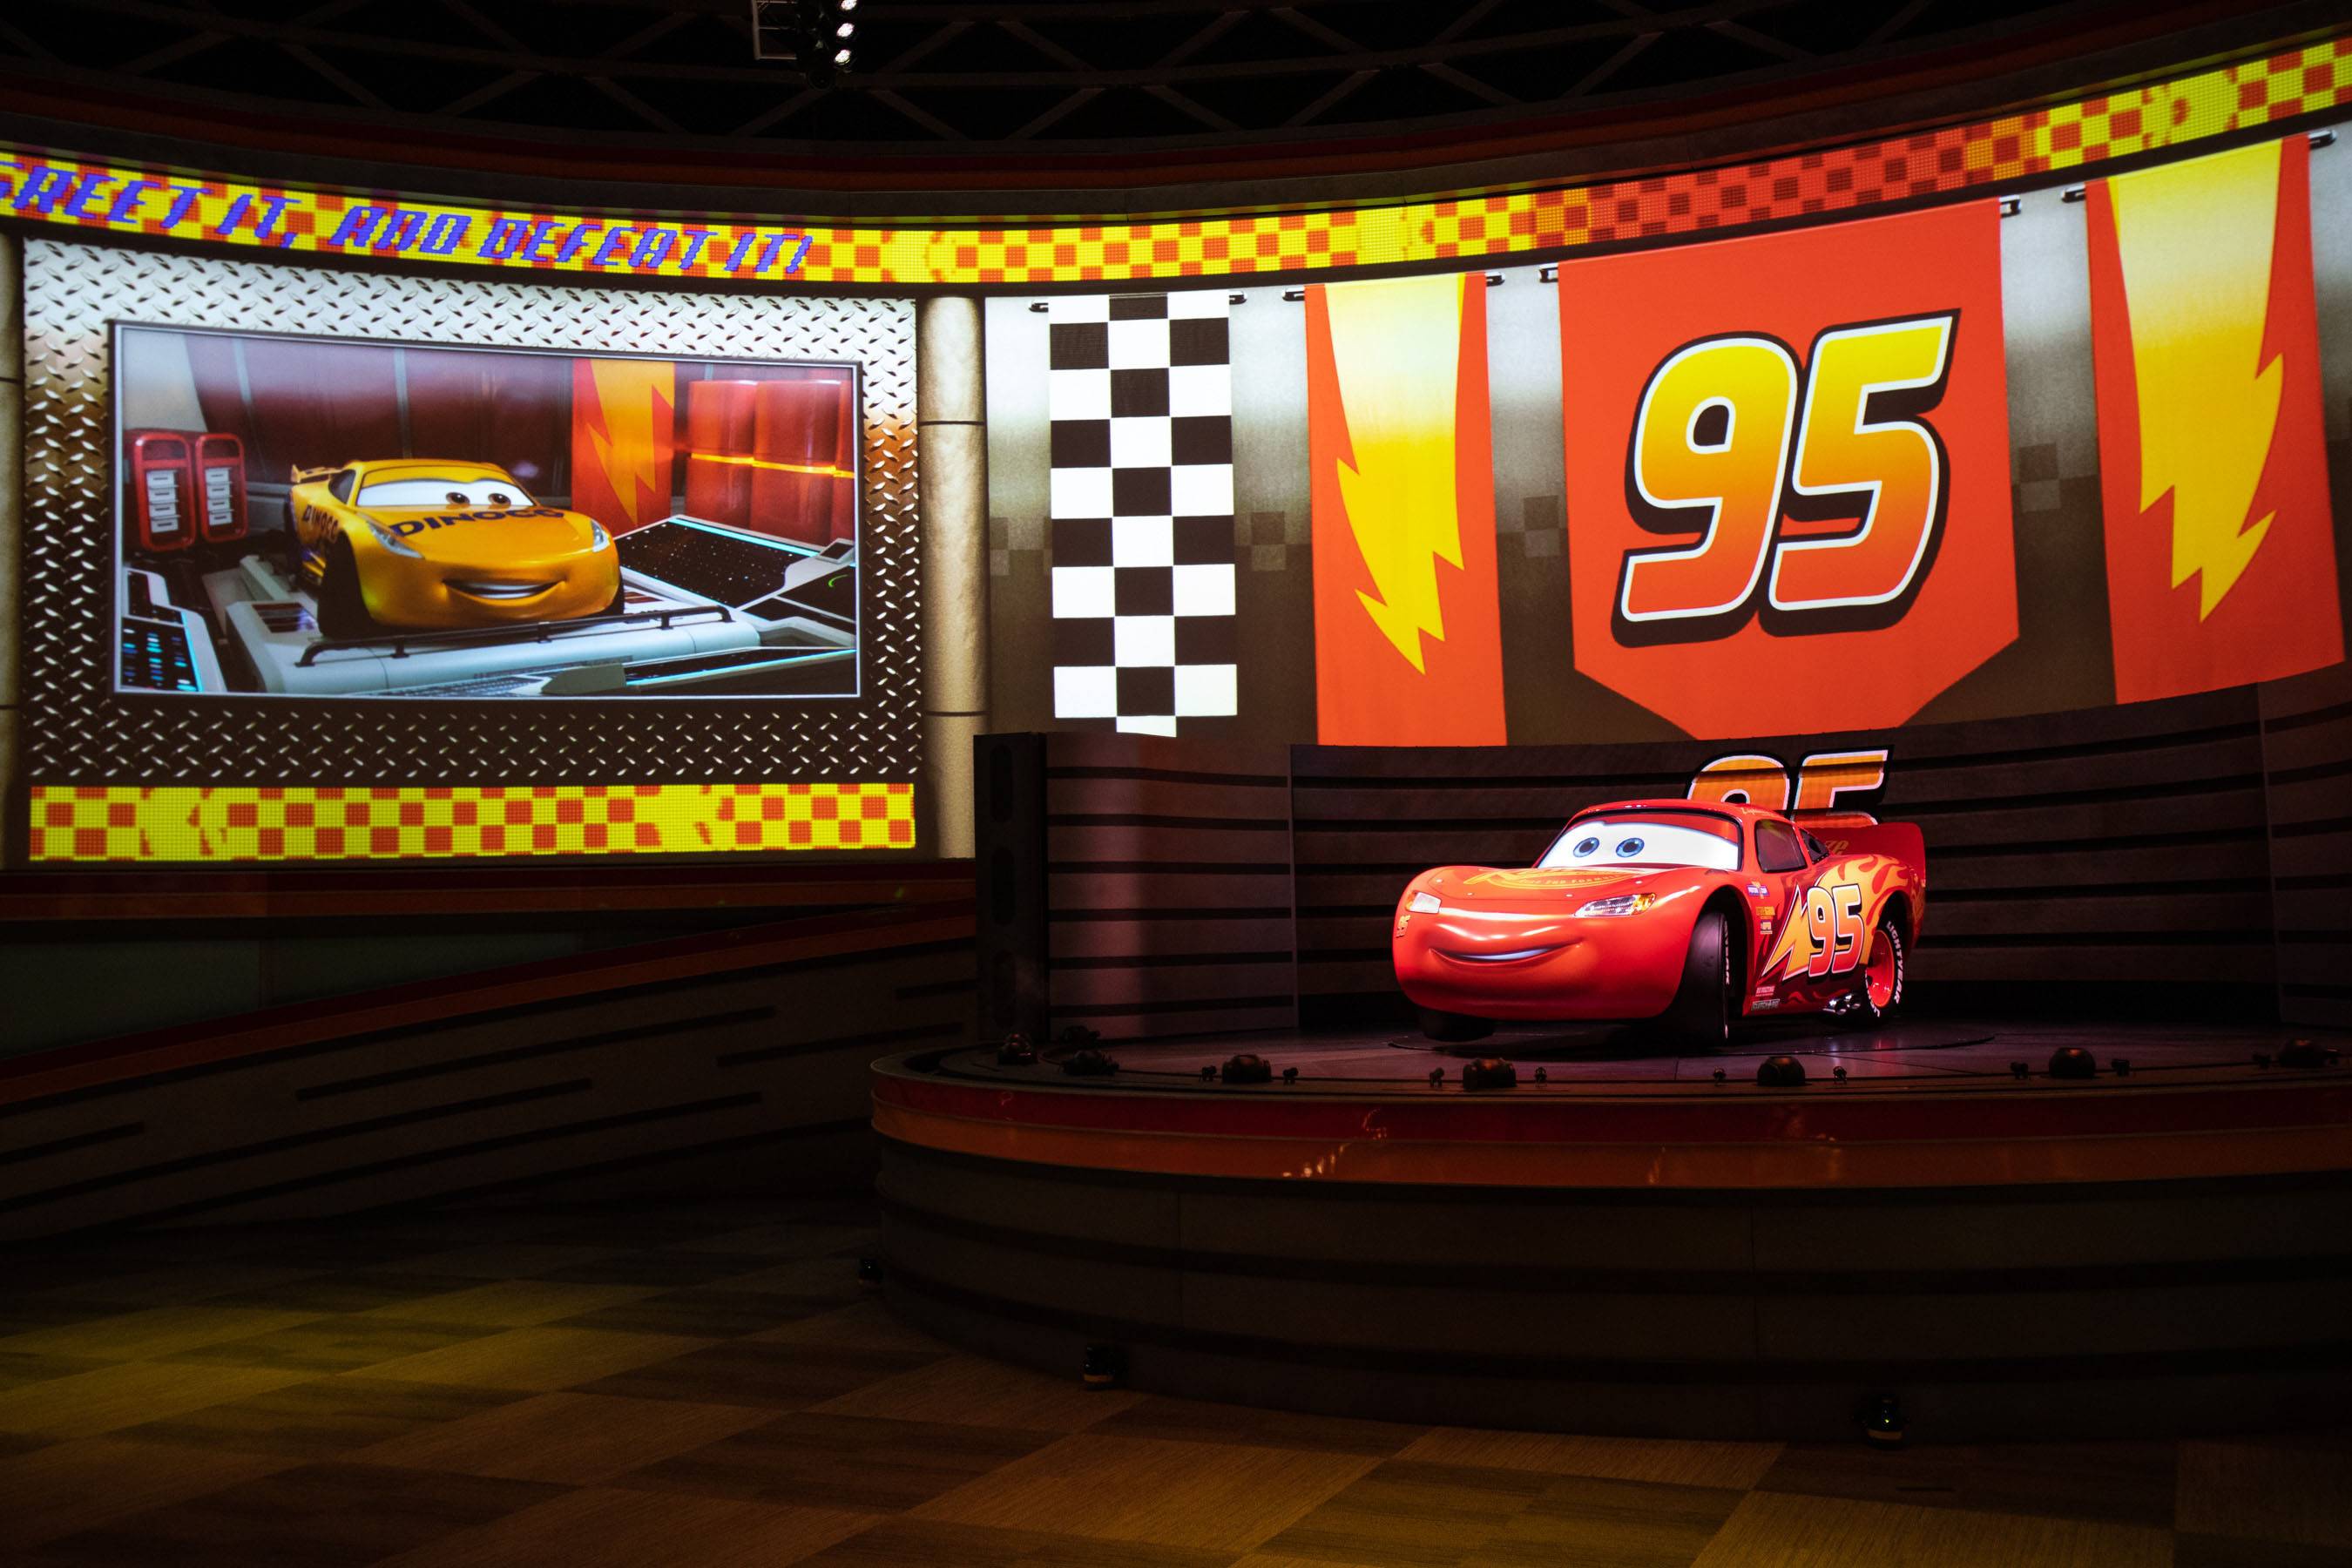  Lightning McQueen's Racing Academy show